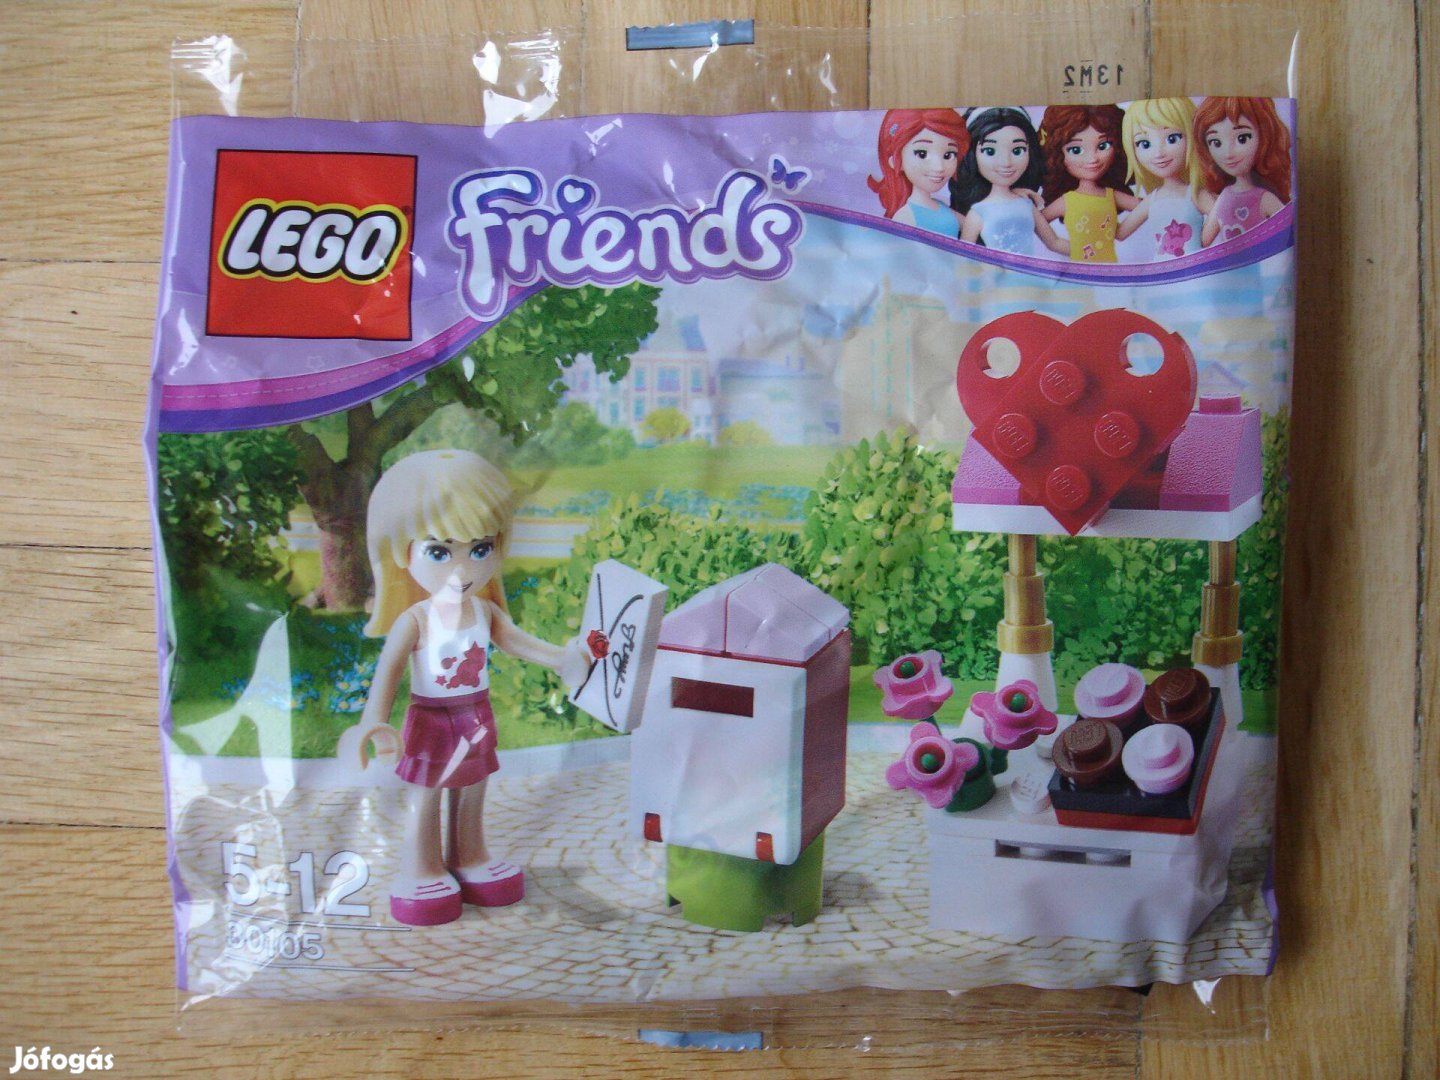 Lego Friends 30105 Bontatlan